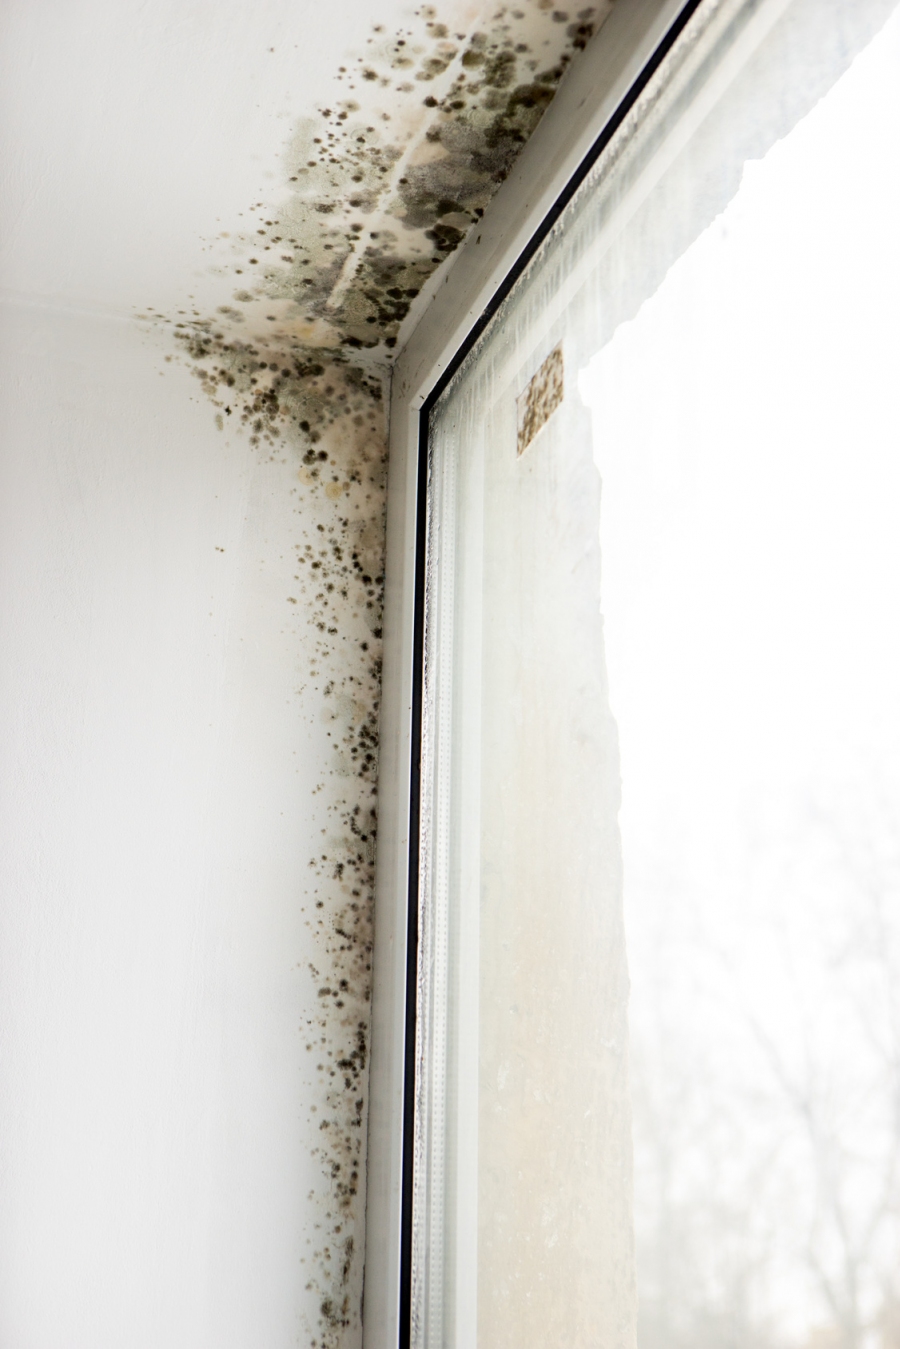 In vielen Wohnungen schimmelt es an den Wänden, vor allem in den Bädern, den Küchen usw. Wie kann man das verhindern?